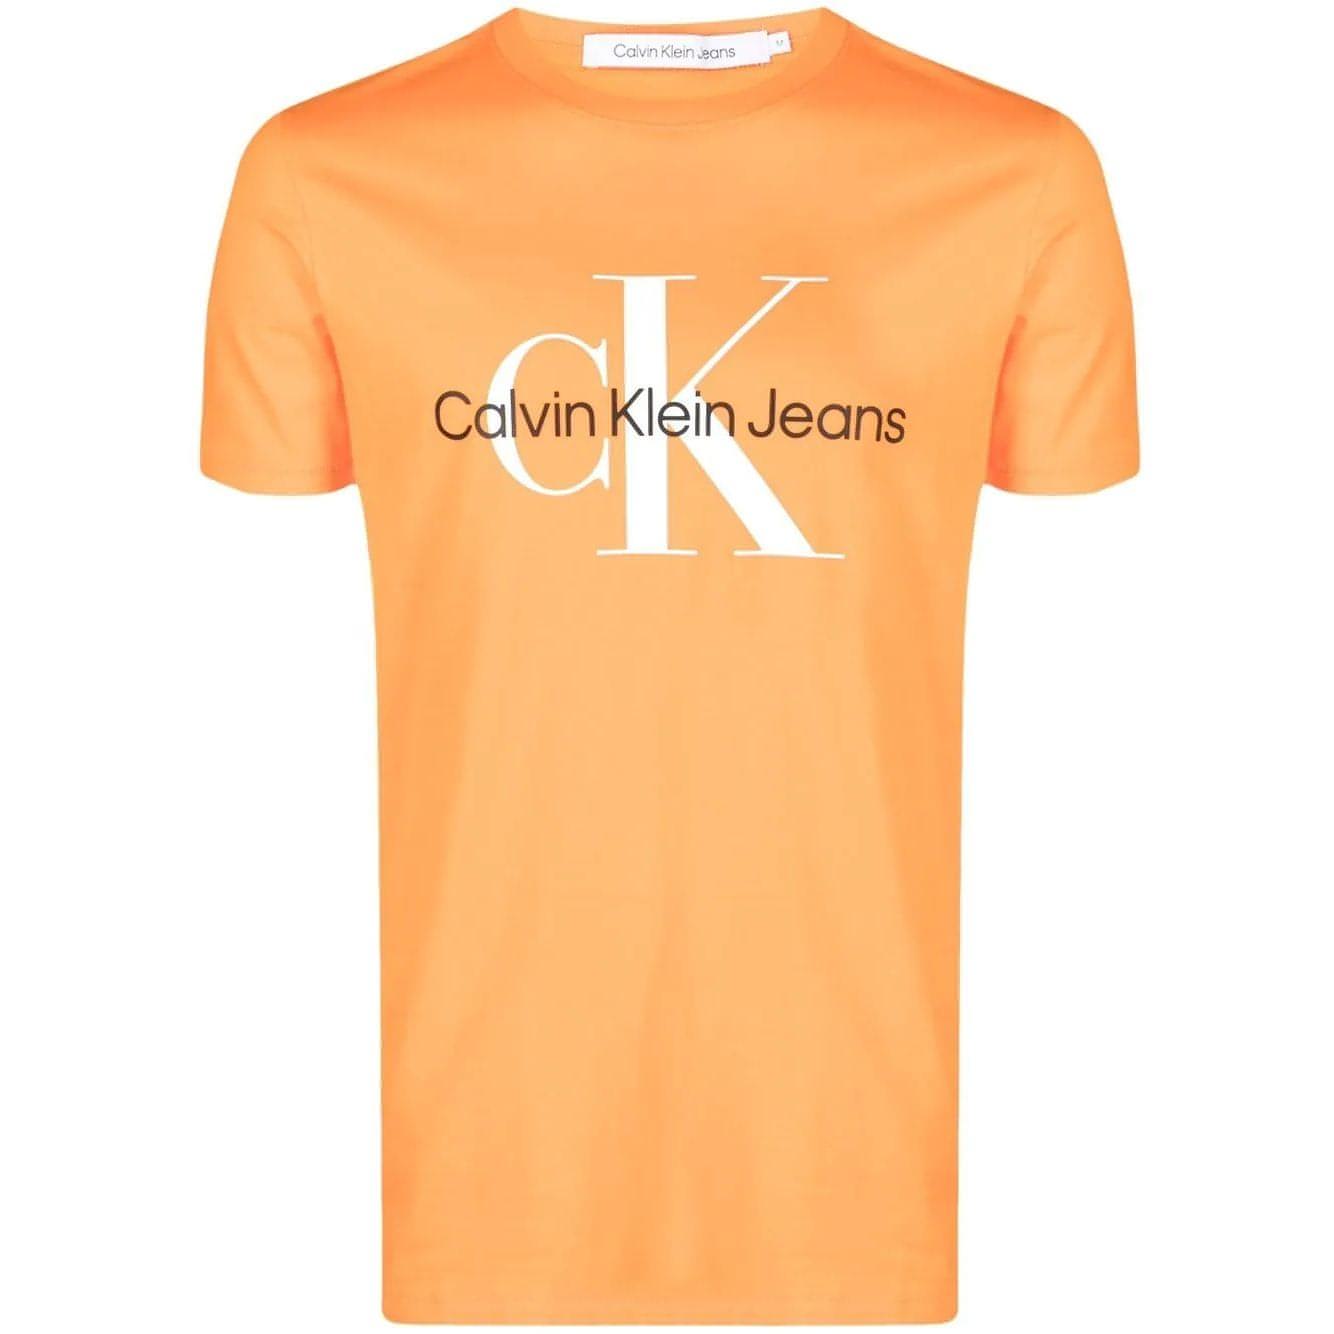 CALVIN KLEIN JEANS vyriški oranžiniai marškinėliai Seasonal monologo tee